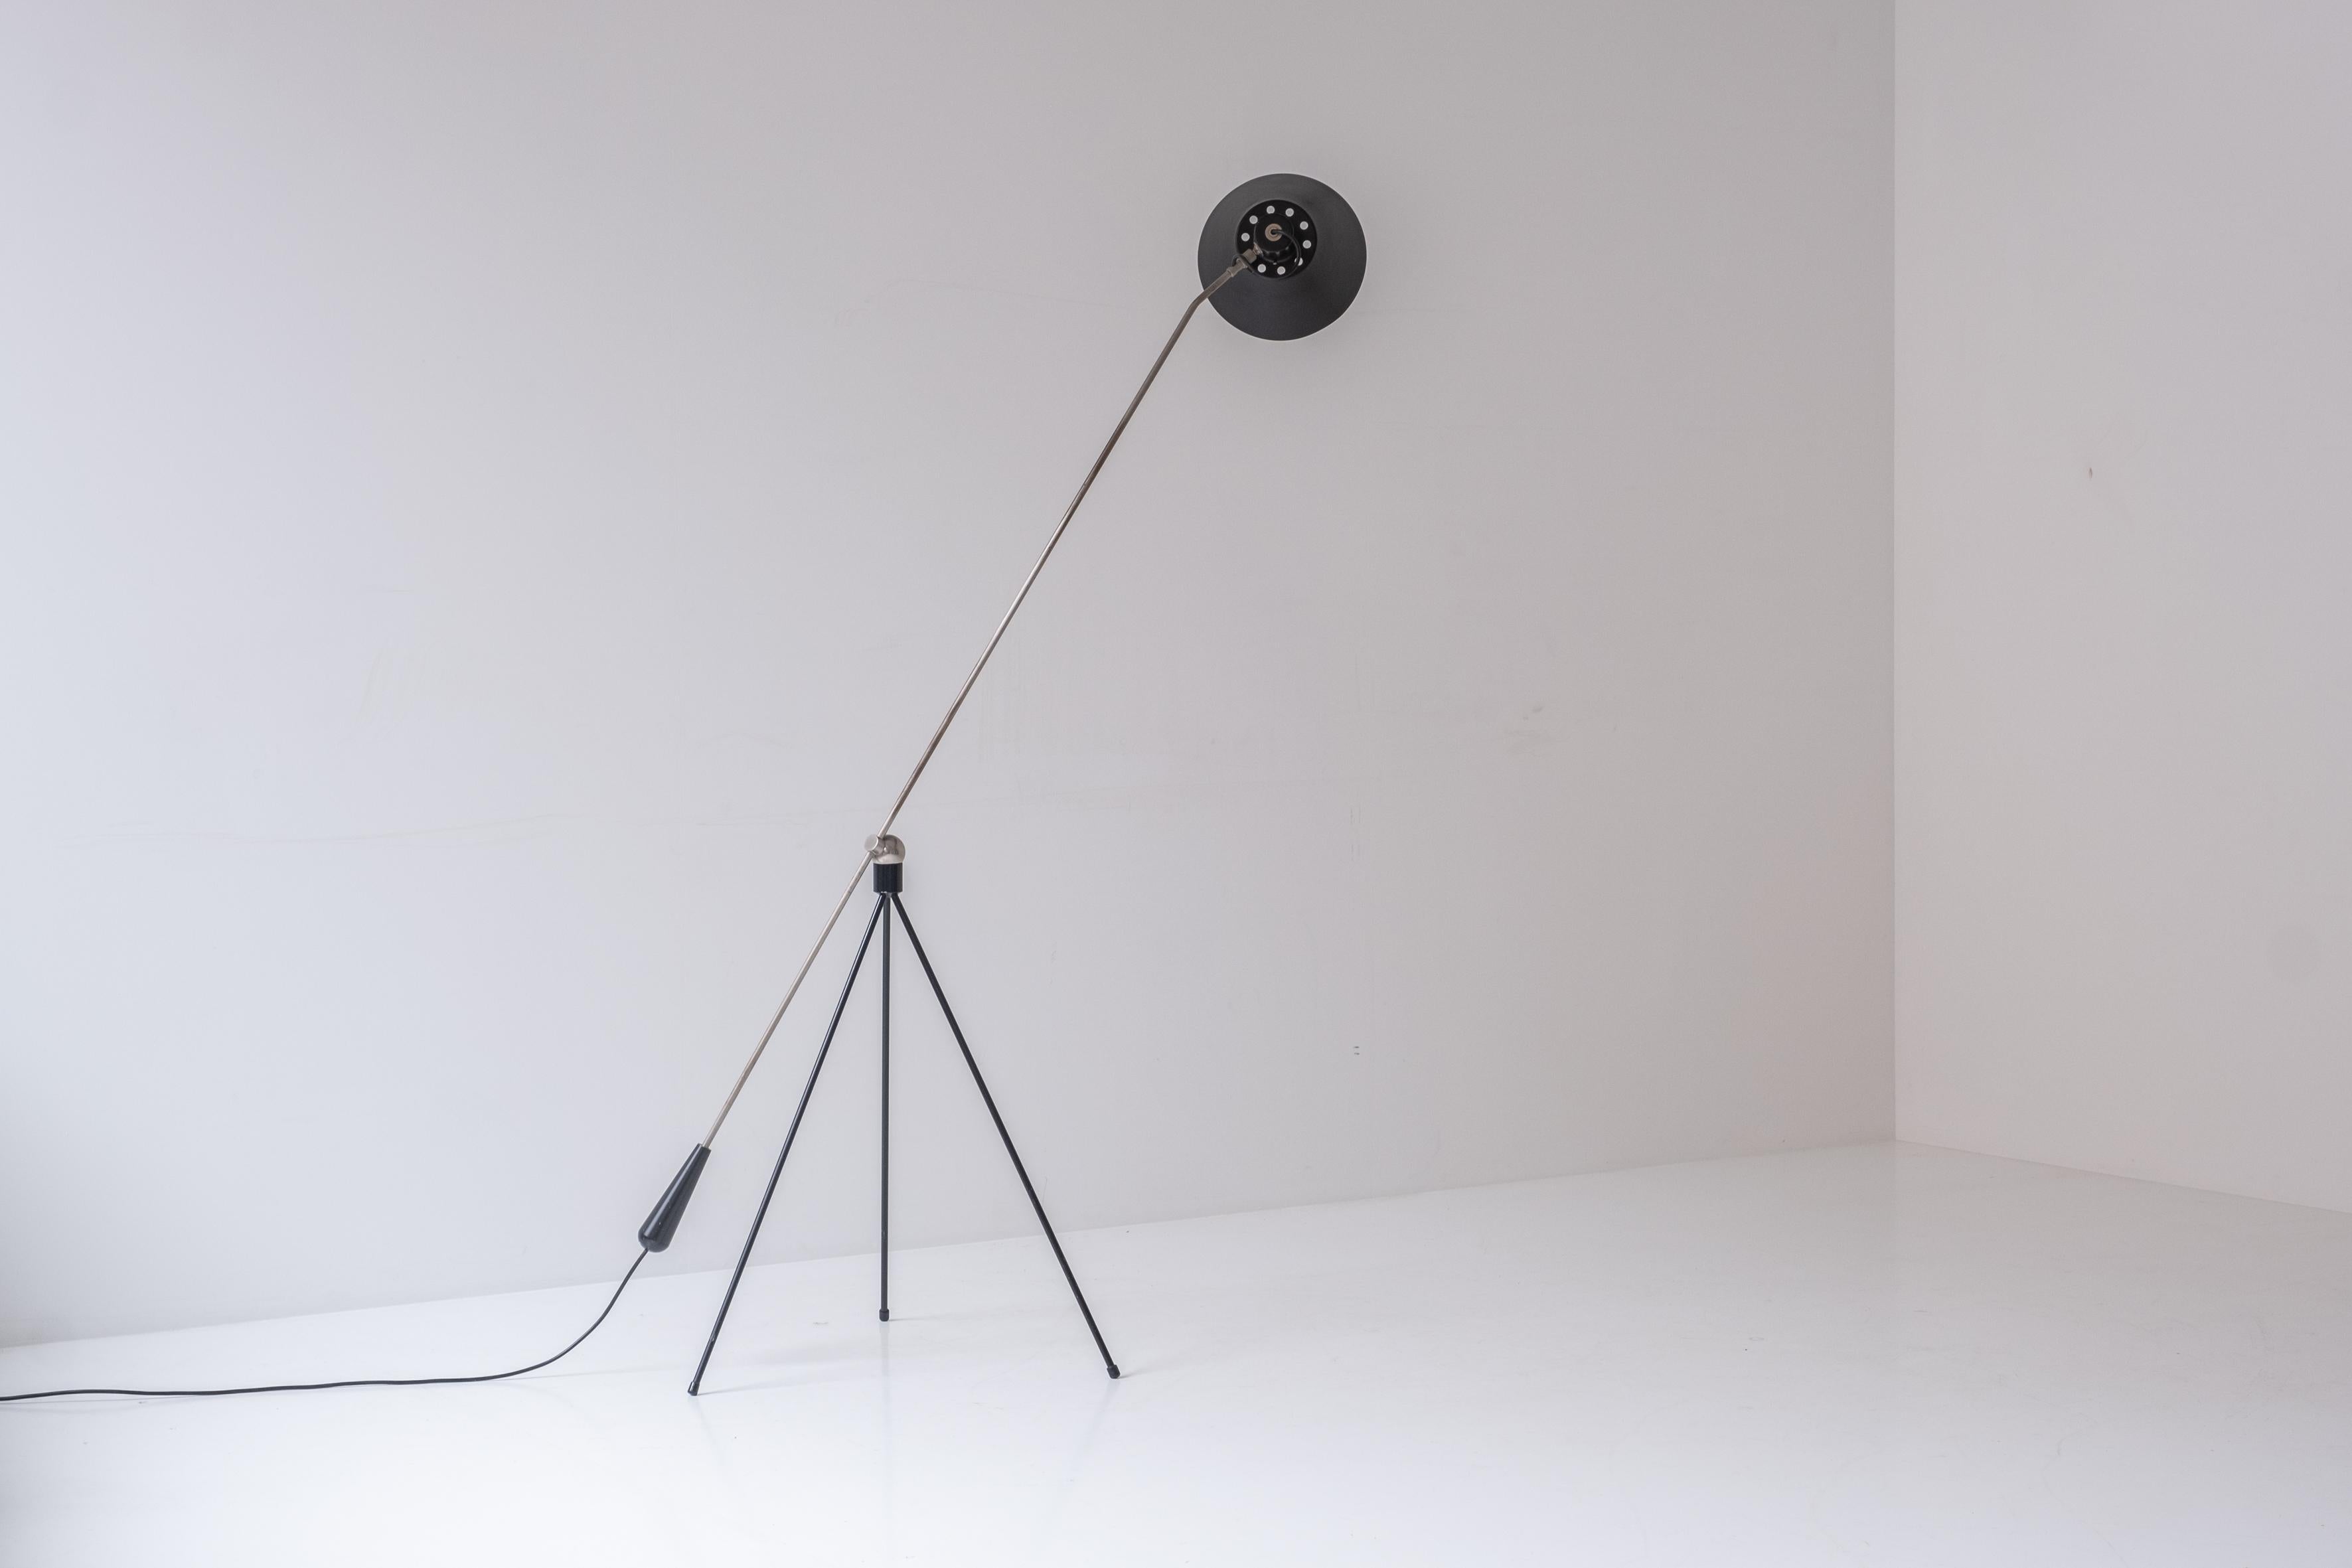 Lampadaire 'Magneto' de H. Fillekes pour Artiforte, Pays-Bas 1954. Ce lampadaire minimaliste est doté d'un pied tripode en métal laqué qui est relié à un bras d'équilibre par un aimant de forme ronde. Cela permet de placer la lampe dans différentes